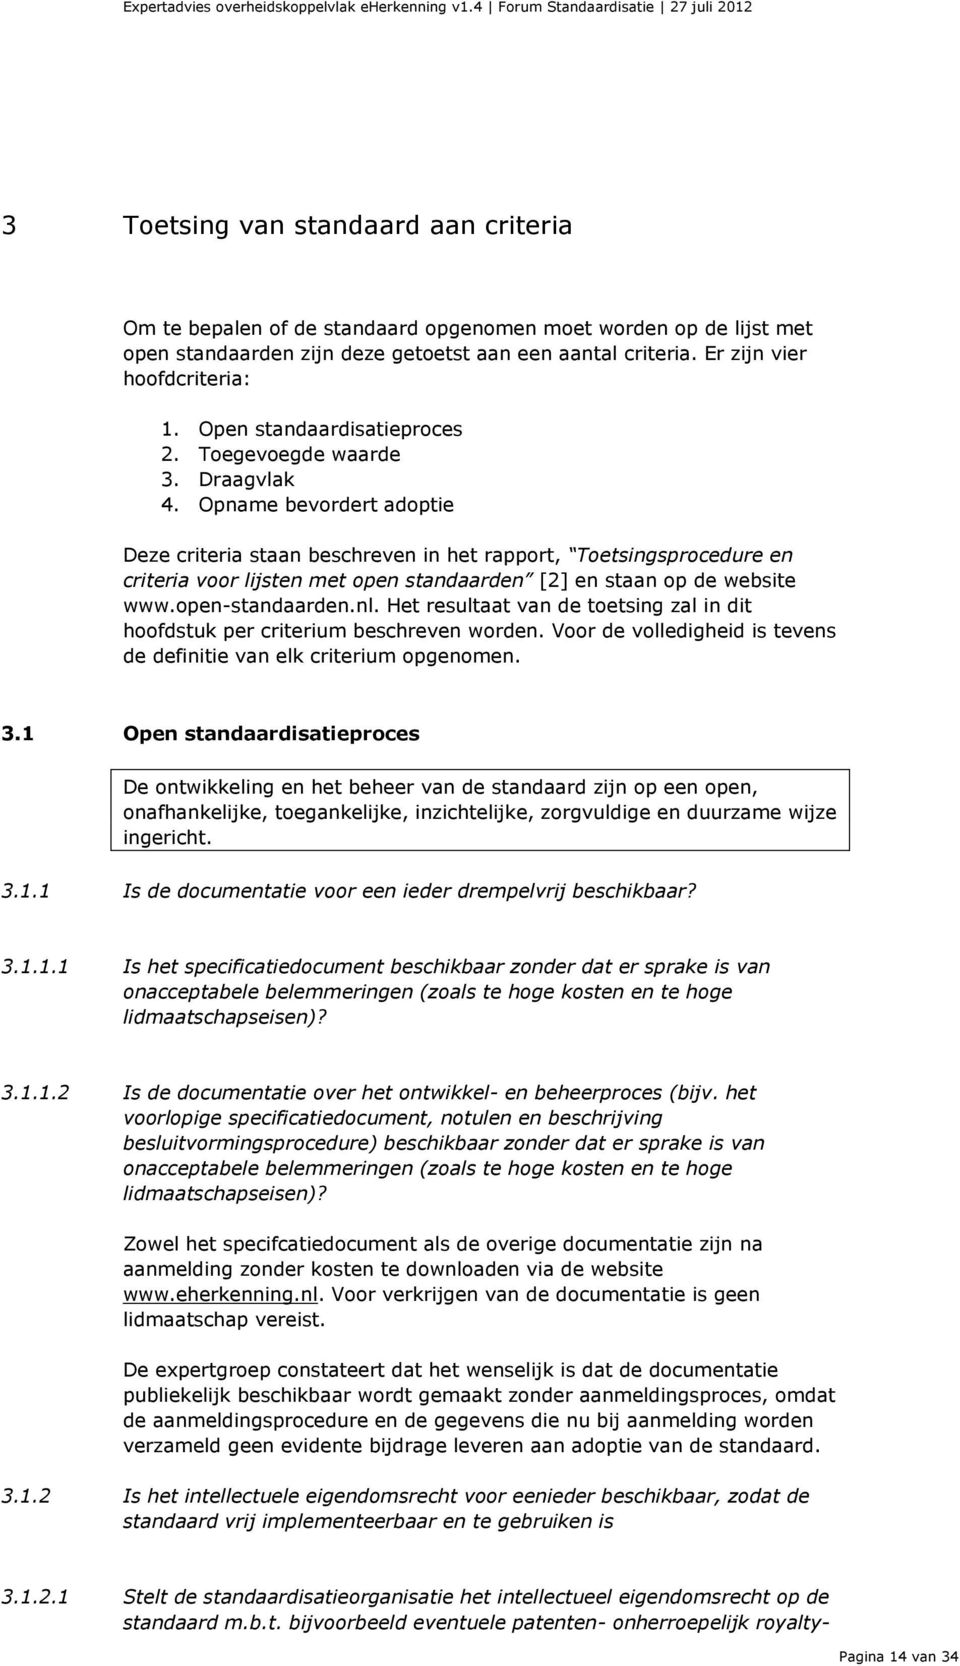 Opname bevordert adoptie Deze criteria staan beschreven in het rapport, Toetsingsprocedure en criteria voor lijsten met open standaarden [2] en staan op de website www.open-standaarden.nl.